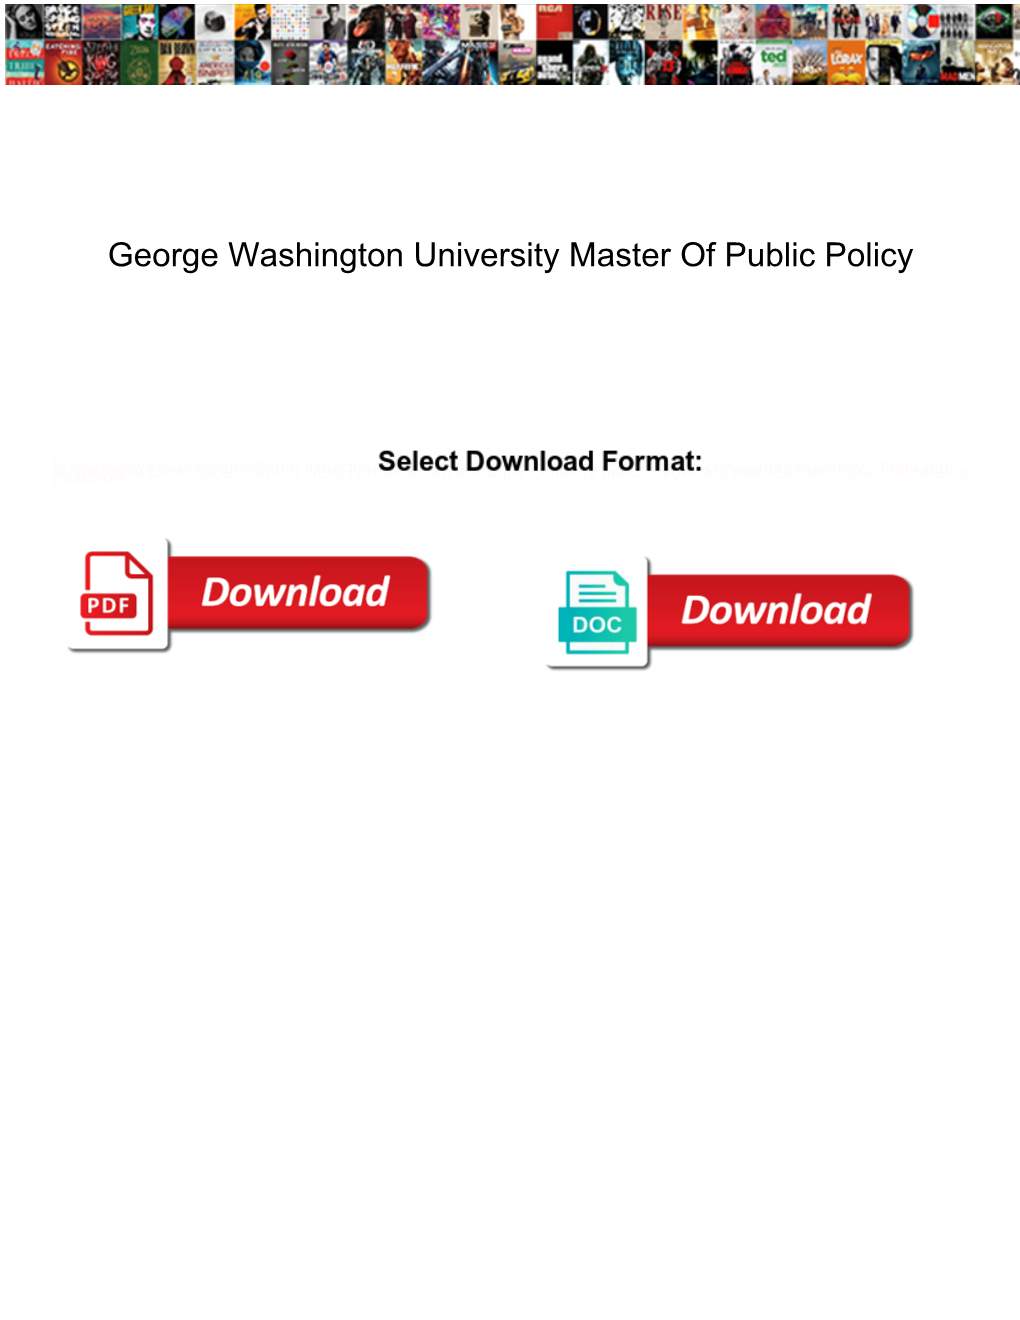 George Washington University Master of Public Policy